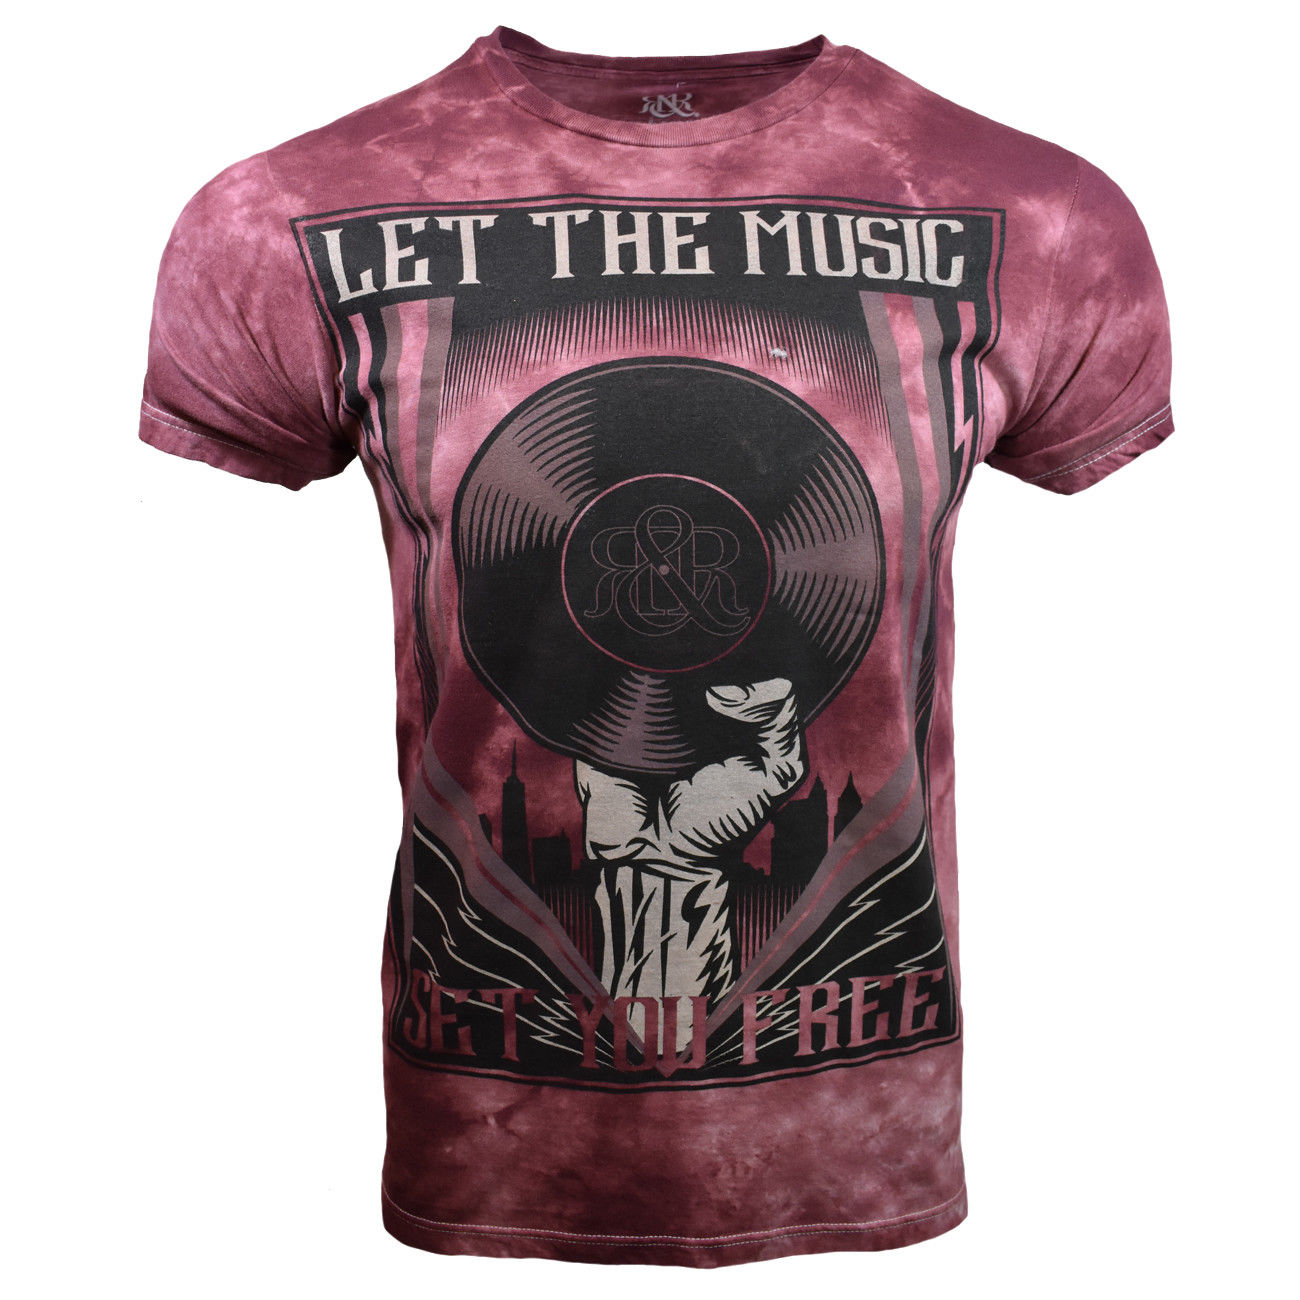 Rock & Republic Let the Music Set You Free T-Shirt - Men/Unisex